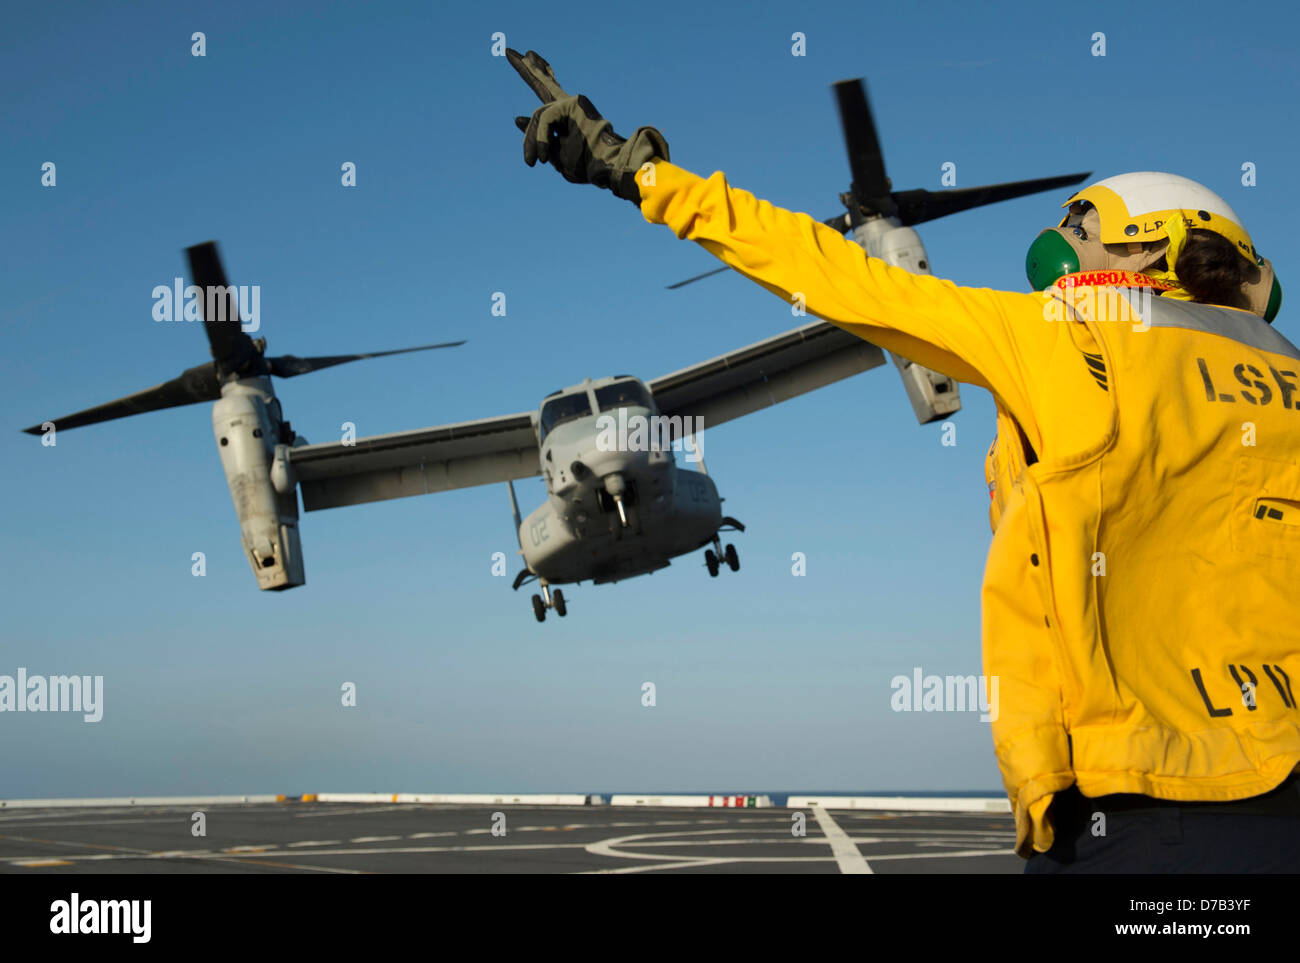 Ein uns Marine Aviation Bootsmann der Mate leitet der Start ein MV-22 Osprey kippen Rotor Flugzeuge auf dem Flugdeck der Amphibious Transport Dock Schiff USS Anchorage 24. April 2013 in den Pazifischen Ozean. Stockfoto